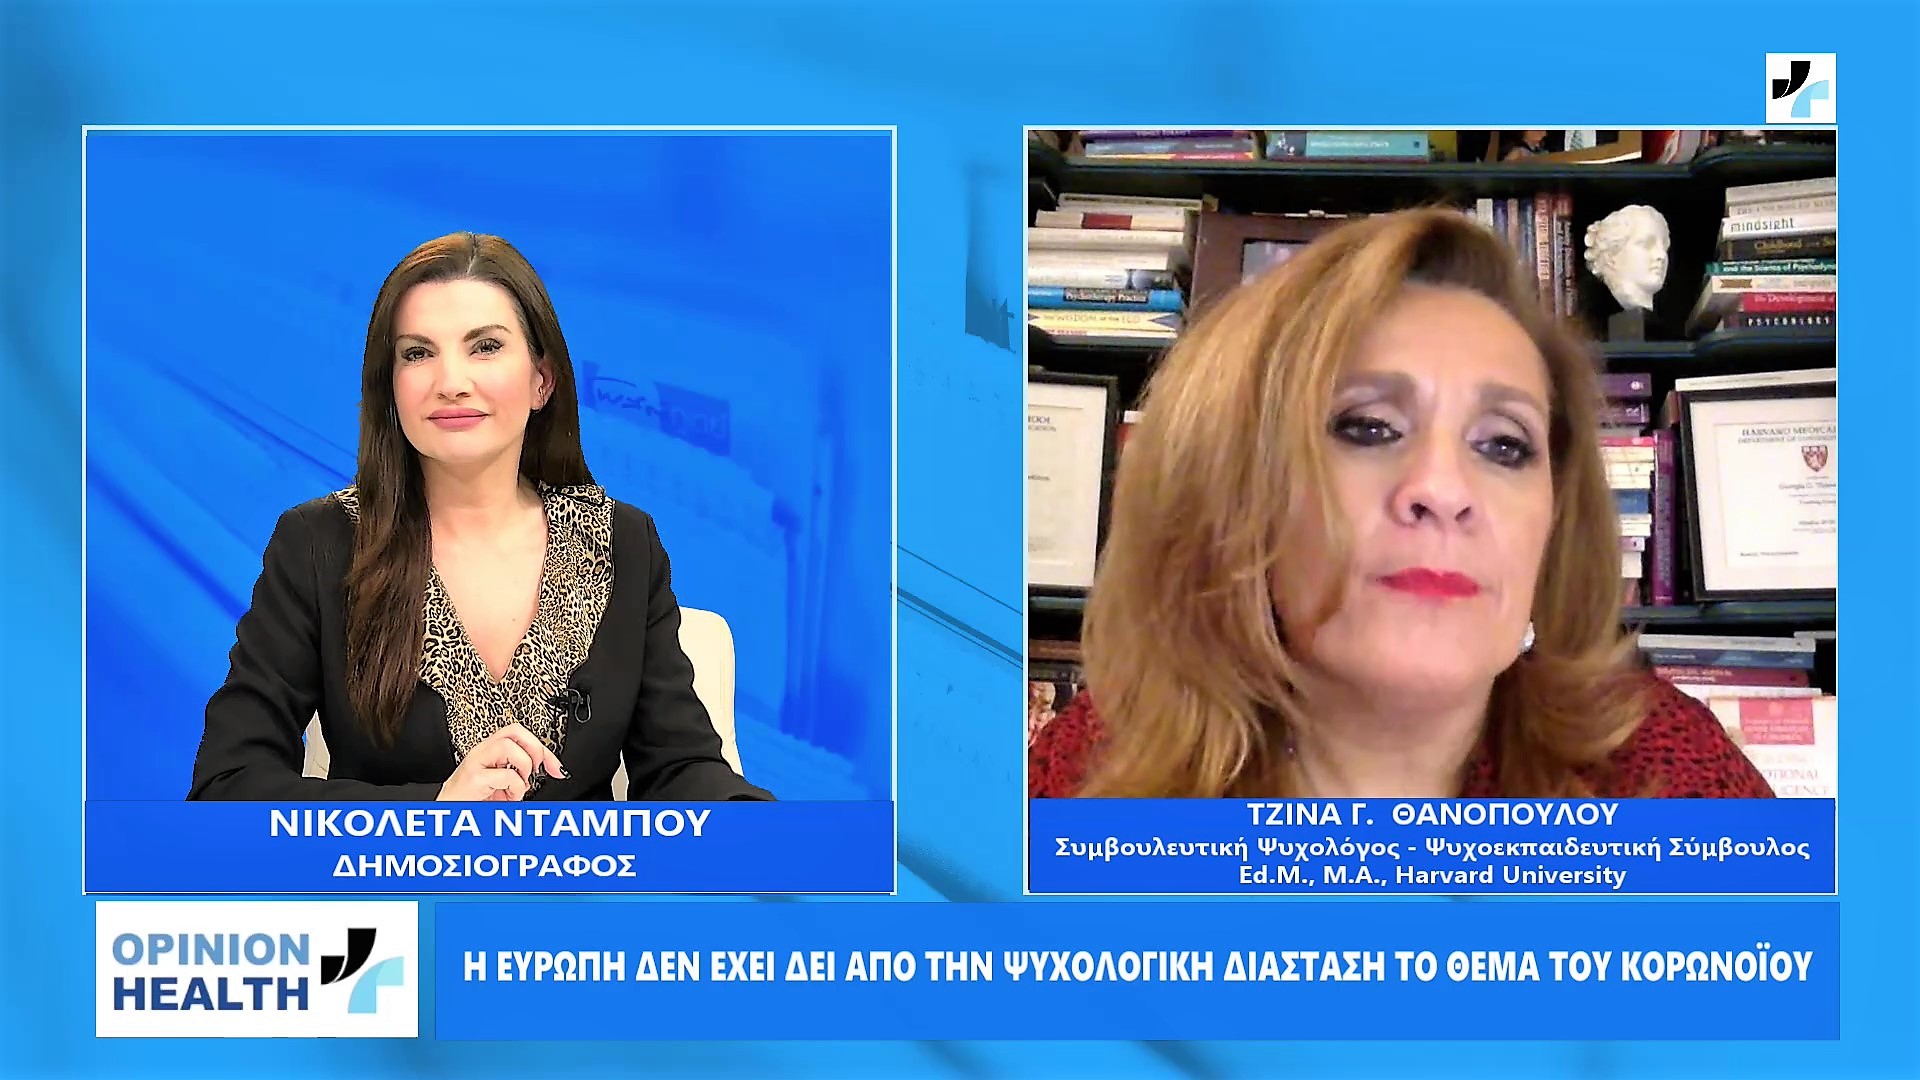 Τζίνα Θανοπούλου στο healthweb : Η Ευρώπη δεν έχει δει την ψυχολογική διάσταση της πανδημίας του κορωνοϊου